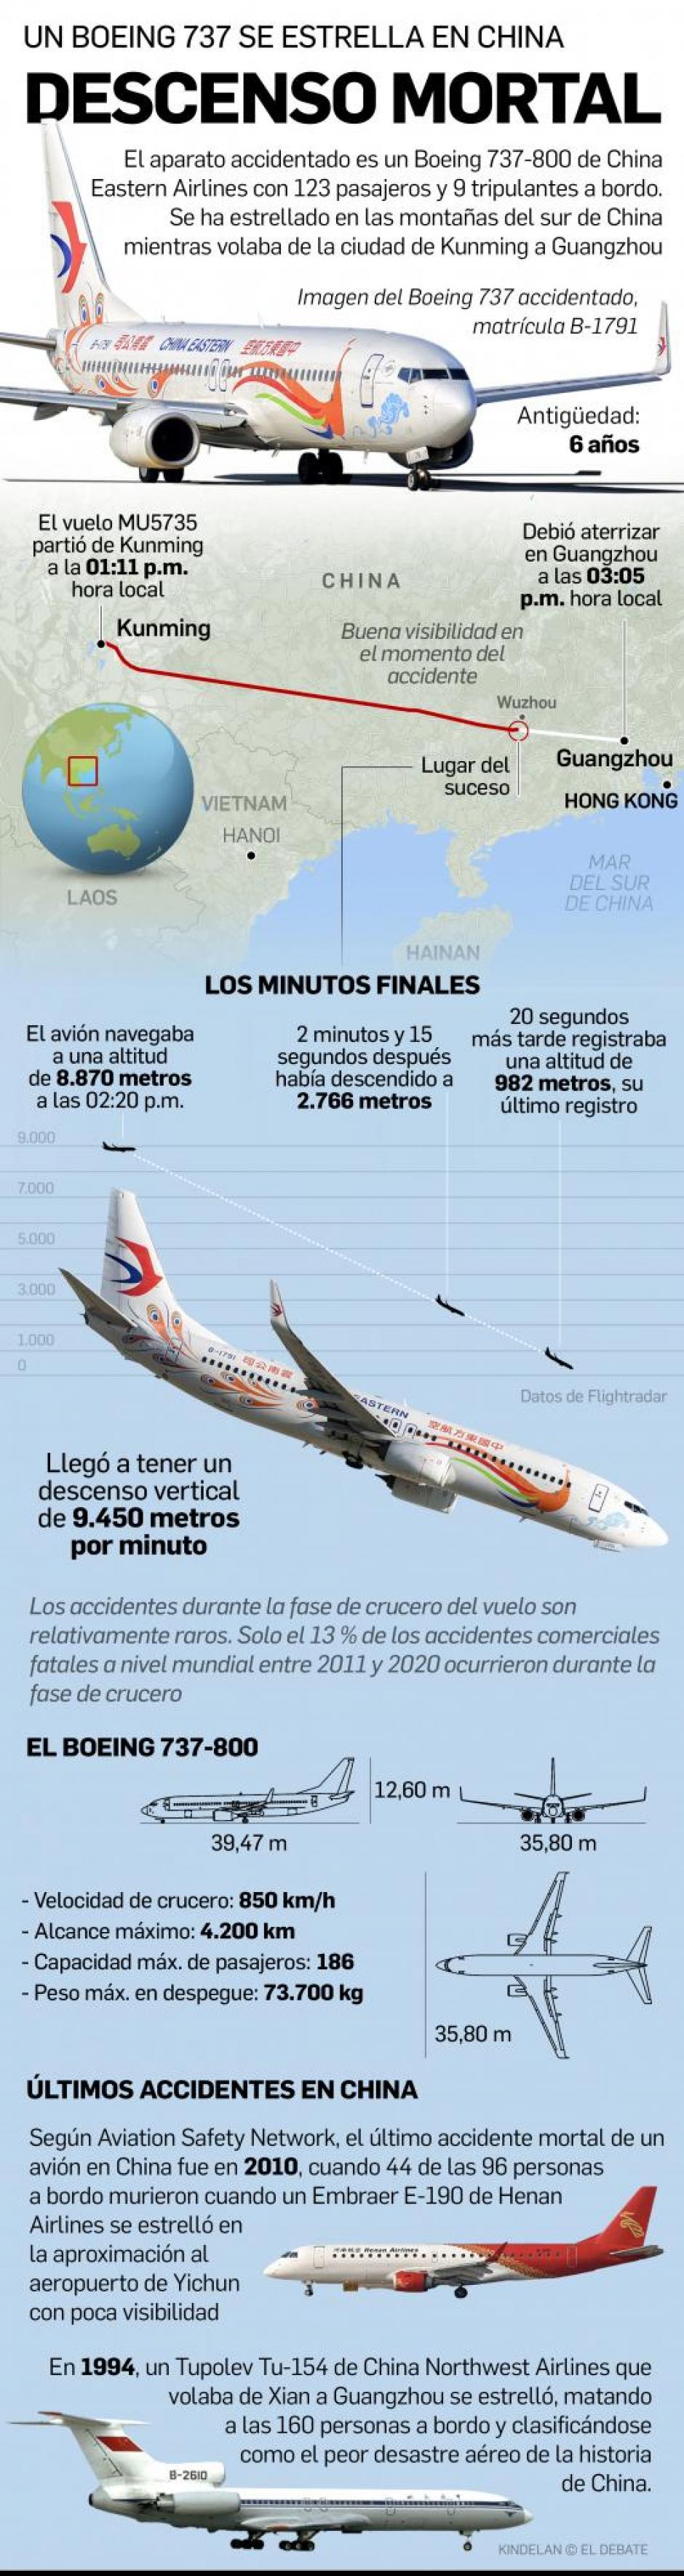 Infografía: explicación accidente aérea China